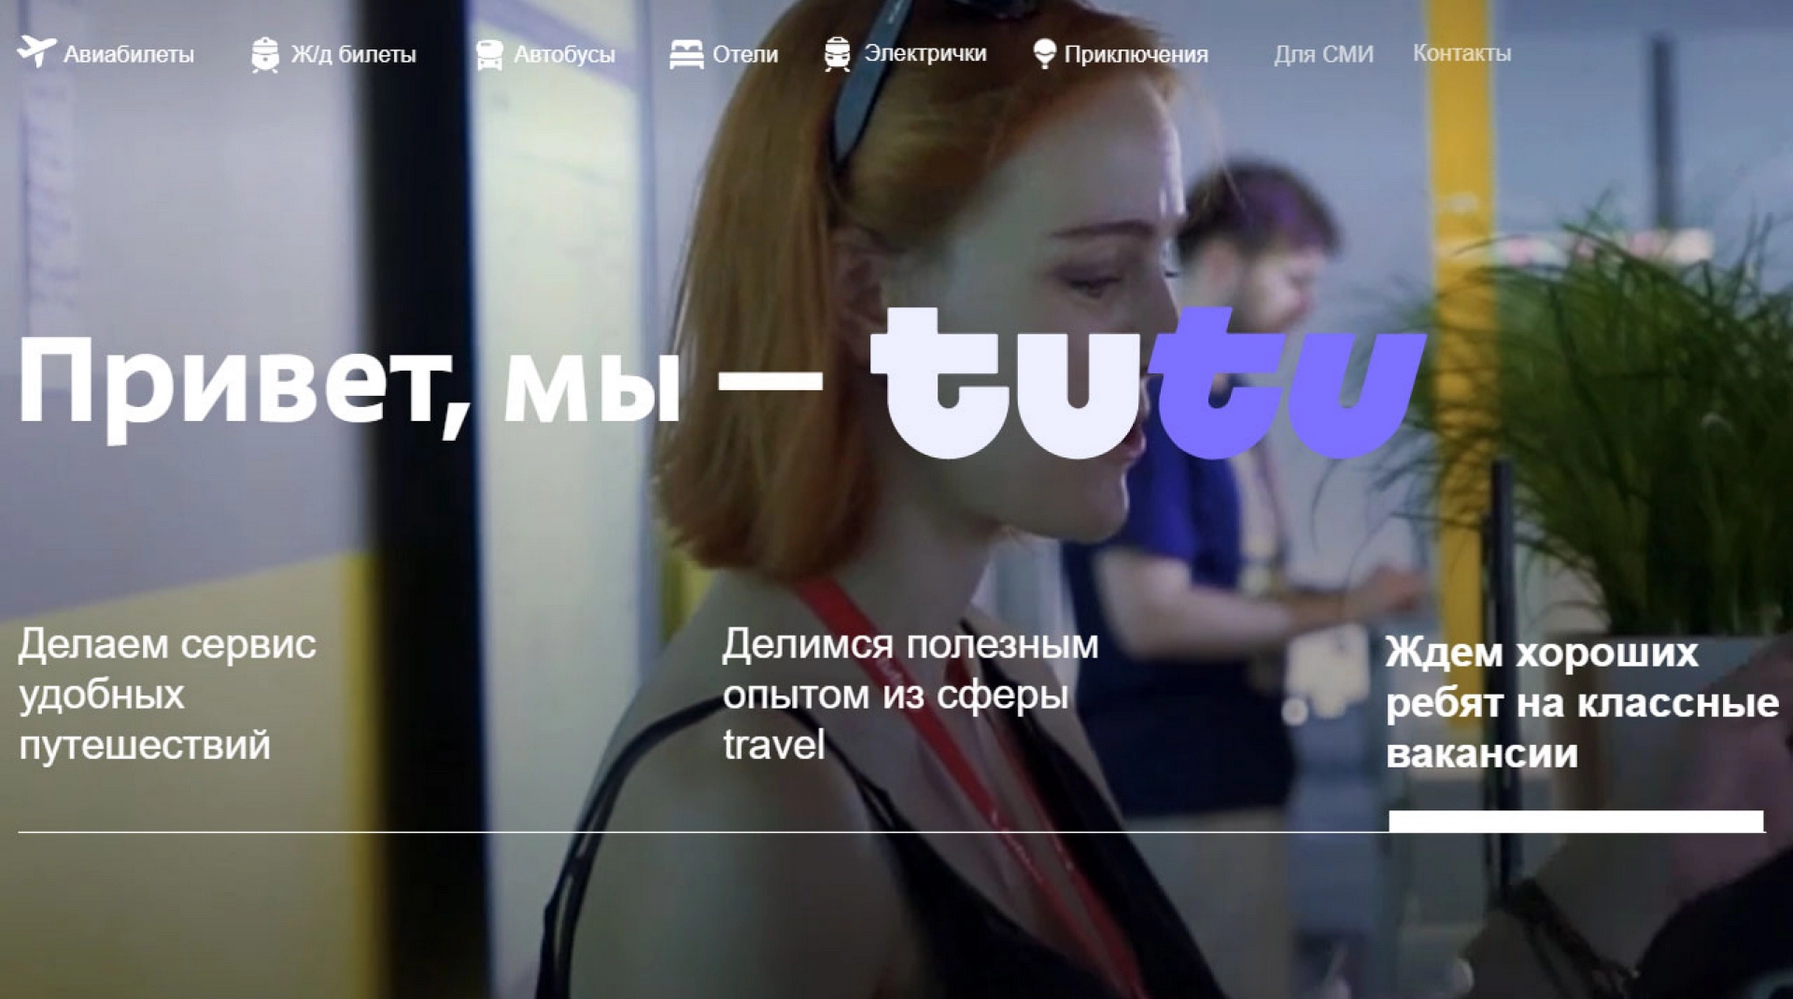 «Туту.ру» сменил логотип: дизайнеры оценили и удивились